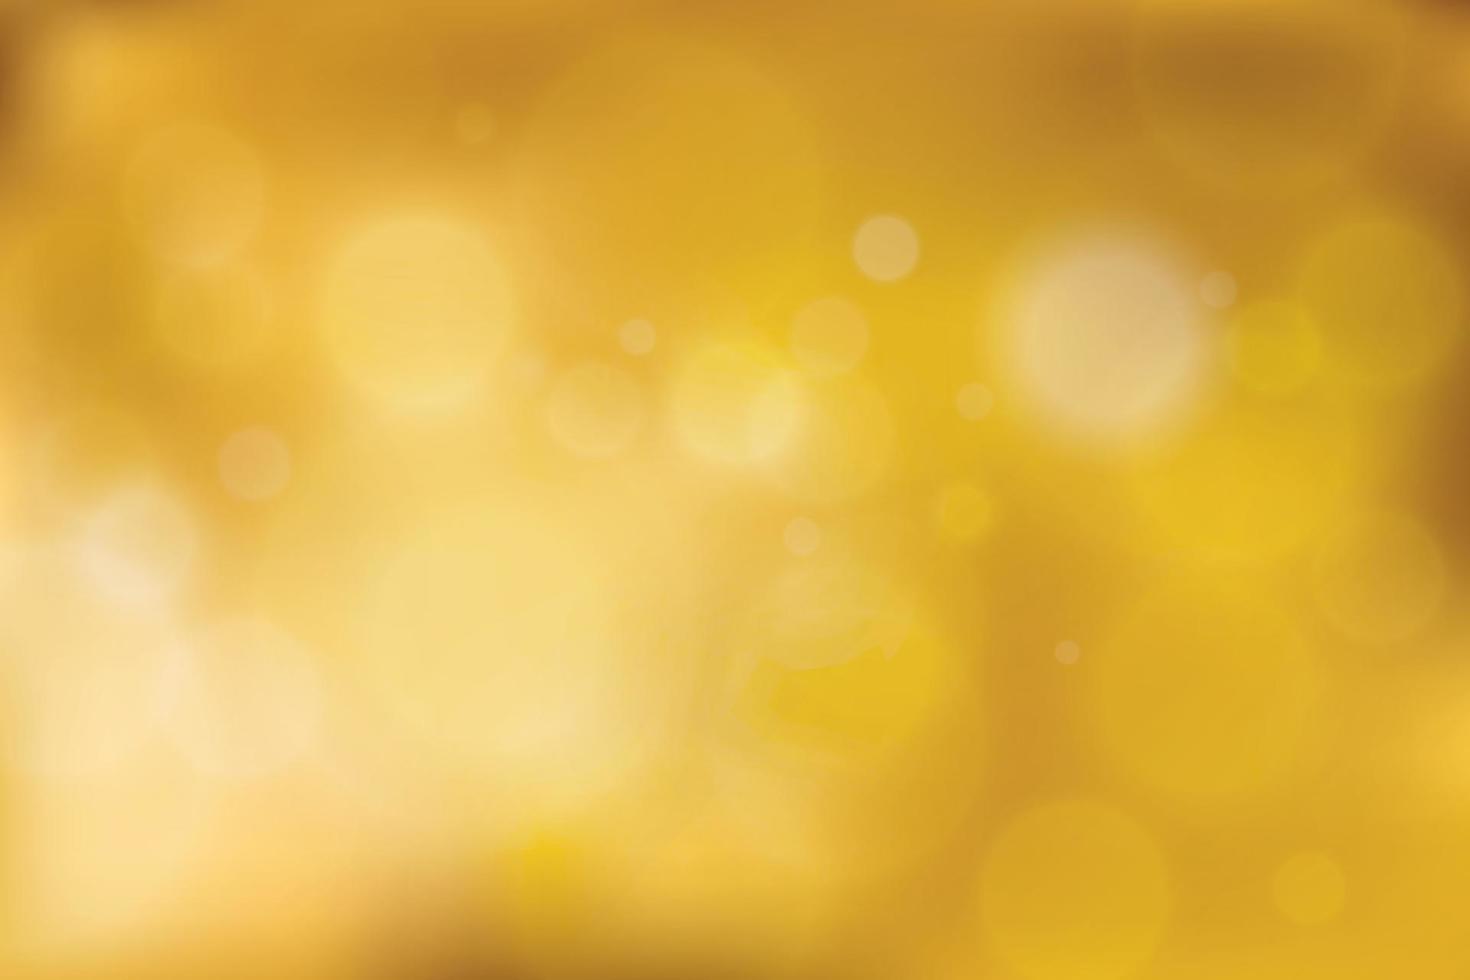 sfumatura sfocata astratta oro con bokeh, sfondo chiaro dorato. illustrazione vettoriale. vettore